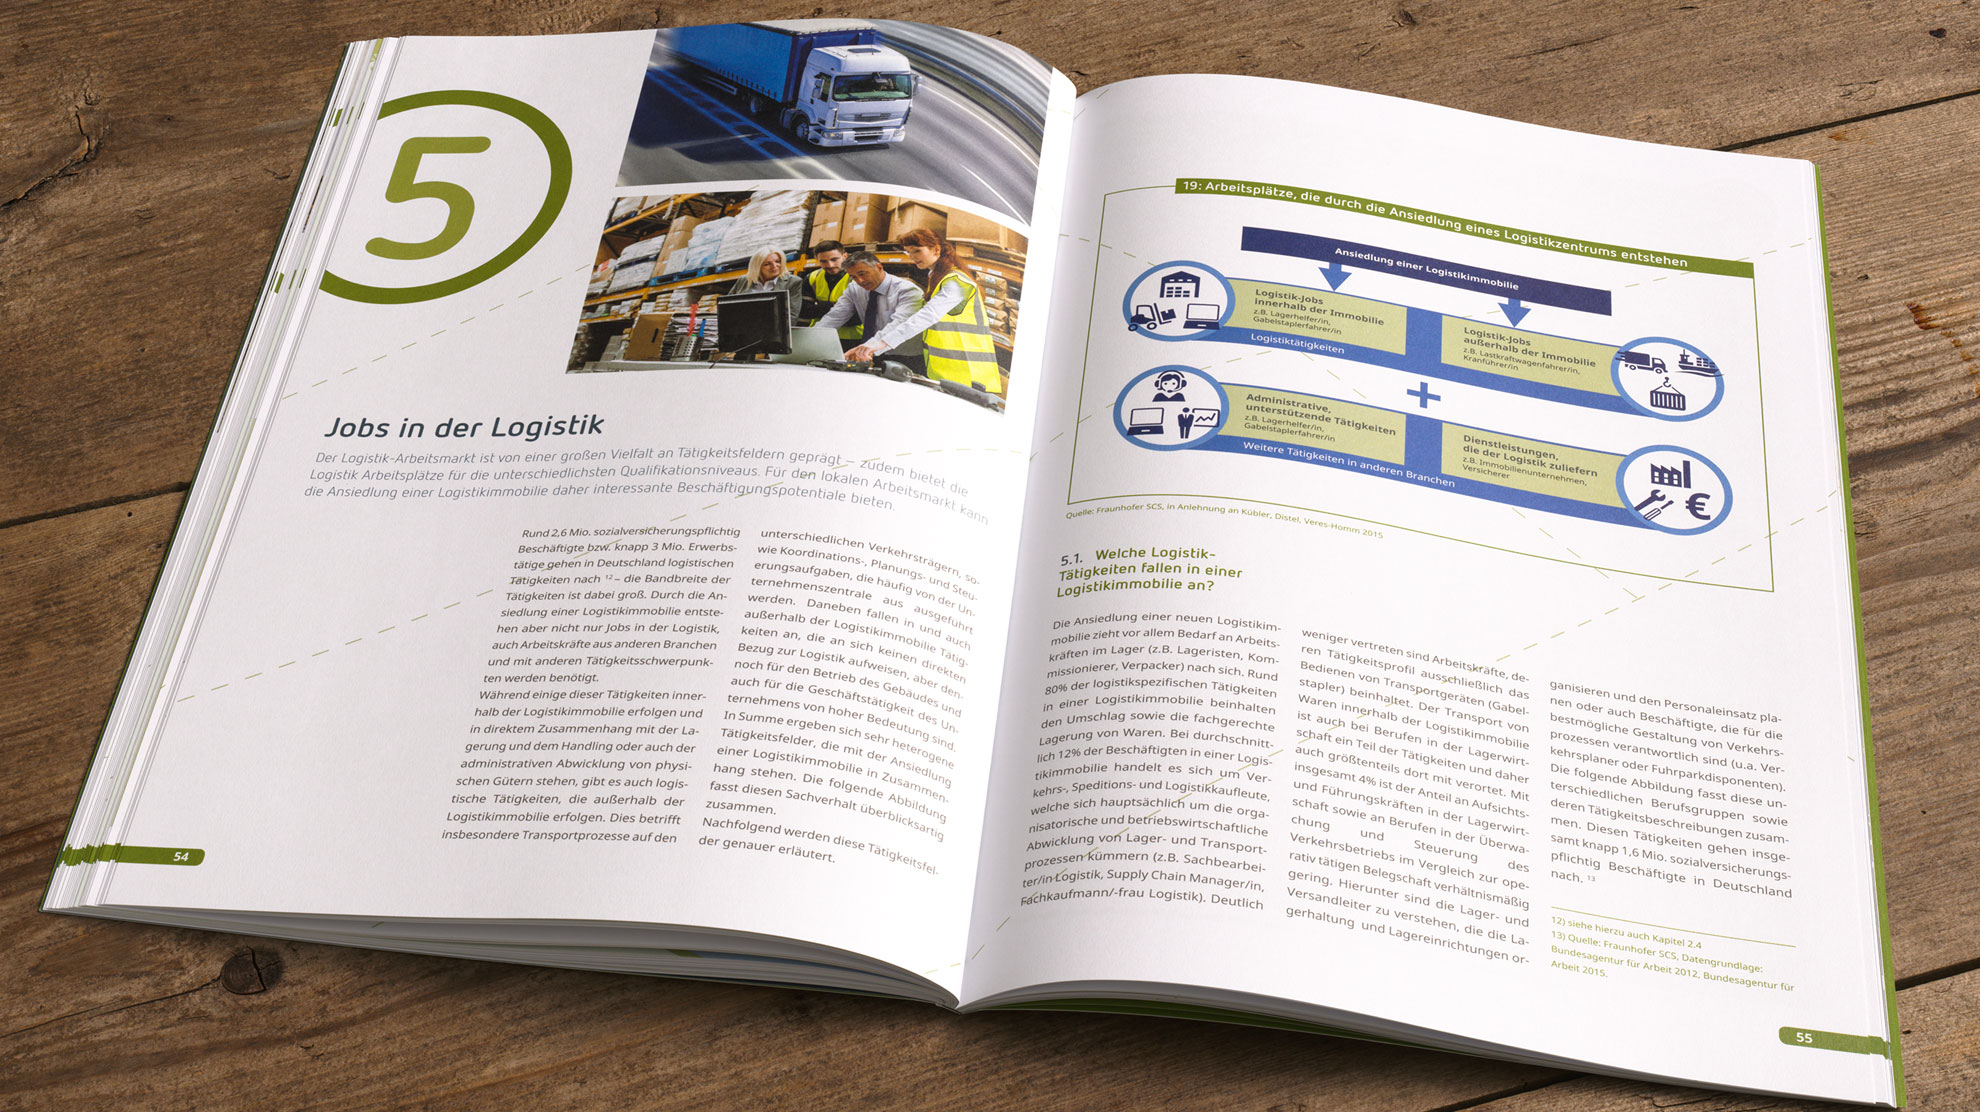 In der Logix-Studie berichtet Kapitel fünf über Jobs in der Logistik.